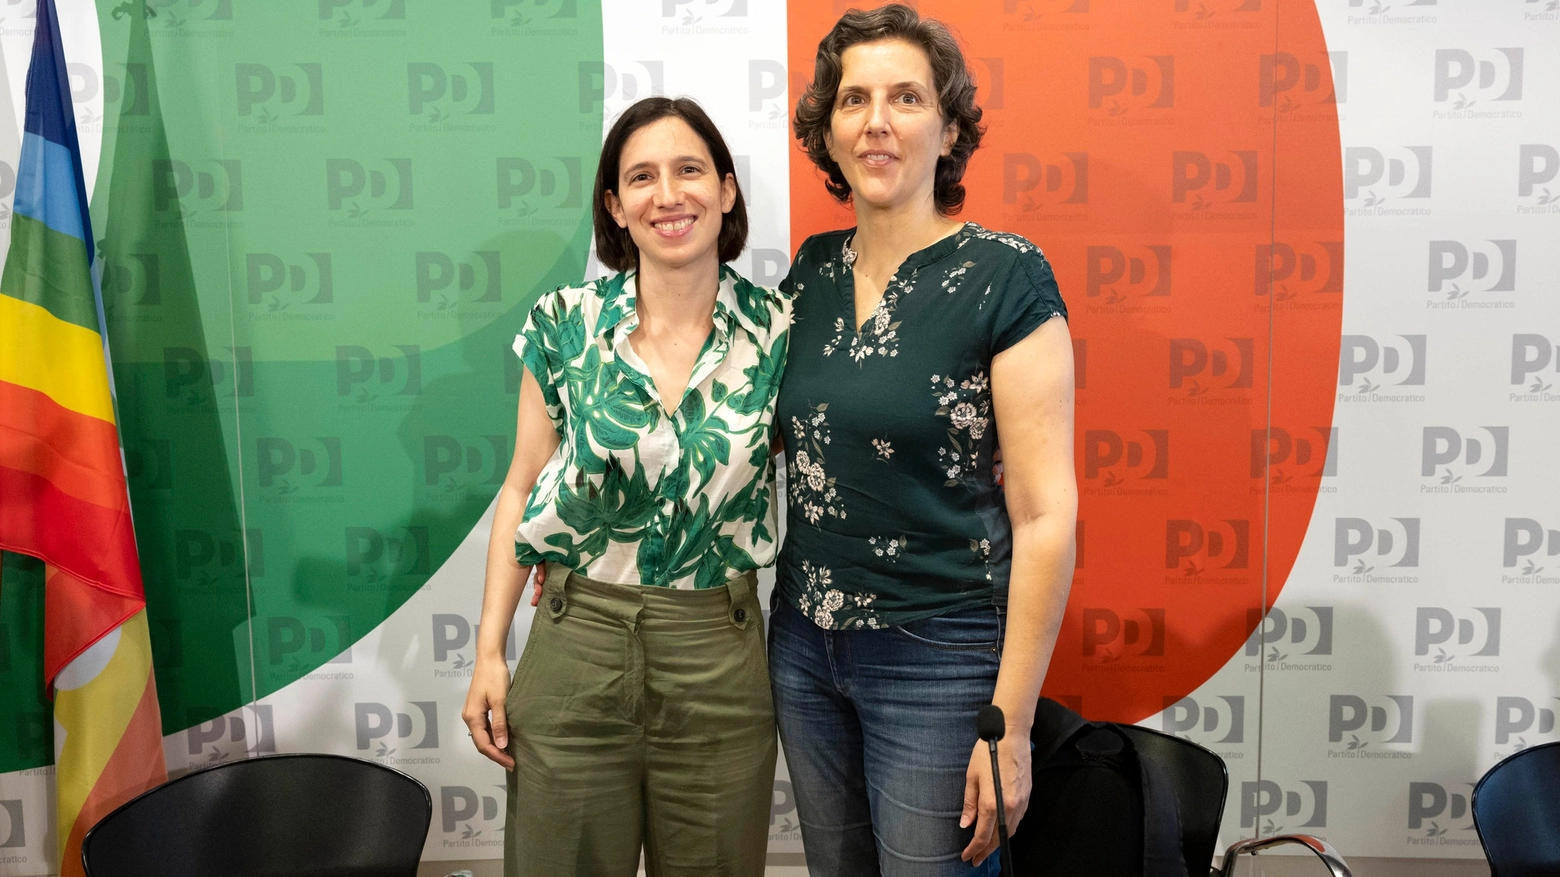 Elly Schlein assieme ad Annalisa Corrado, che nella segretaria nazionale dem ha la pesante delega politica all’Ambiente e al Clima